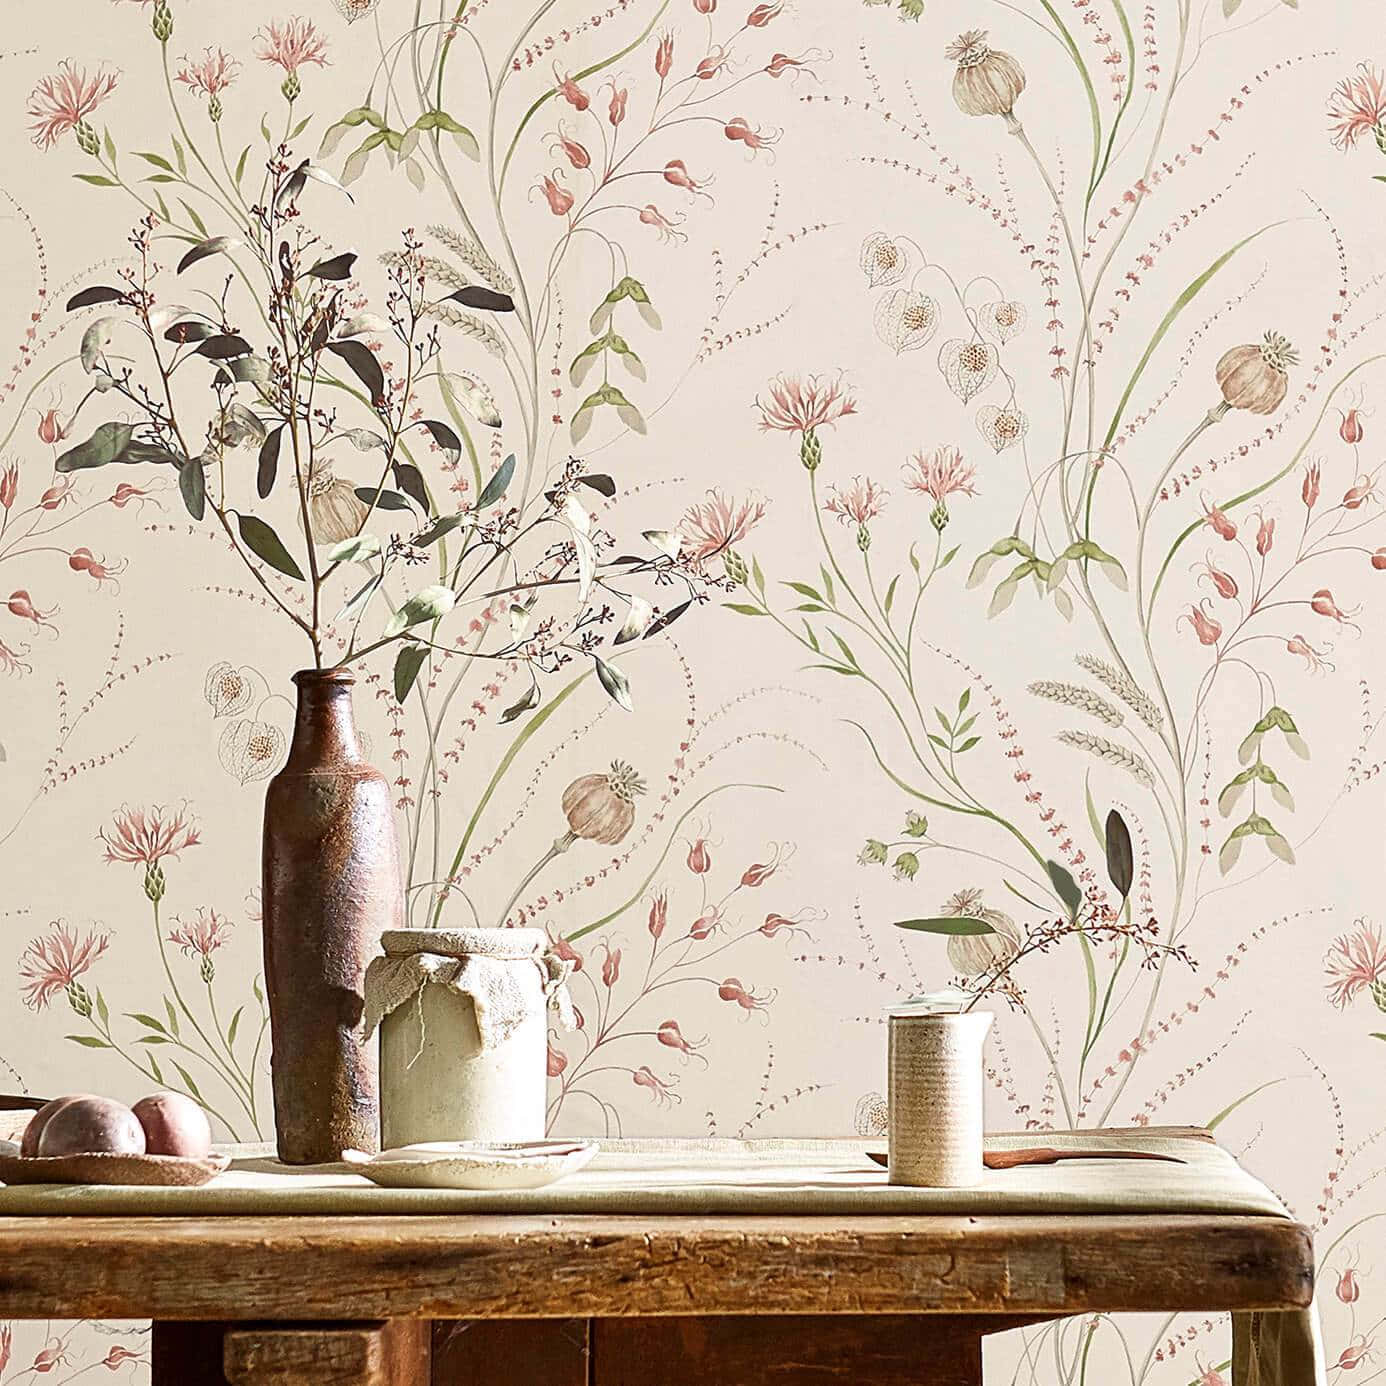 Rustic Floral Still Life Wallpaper